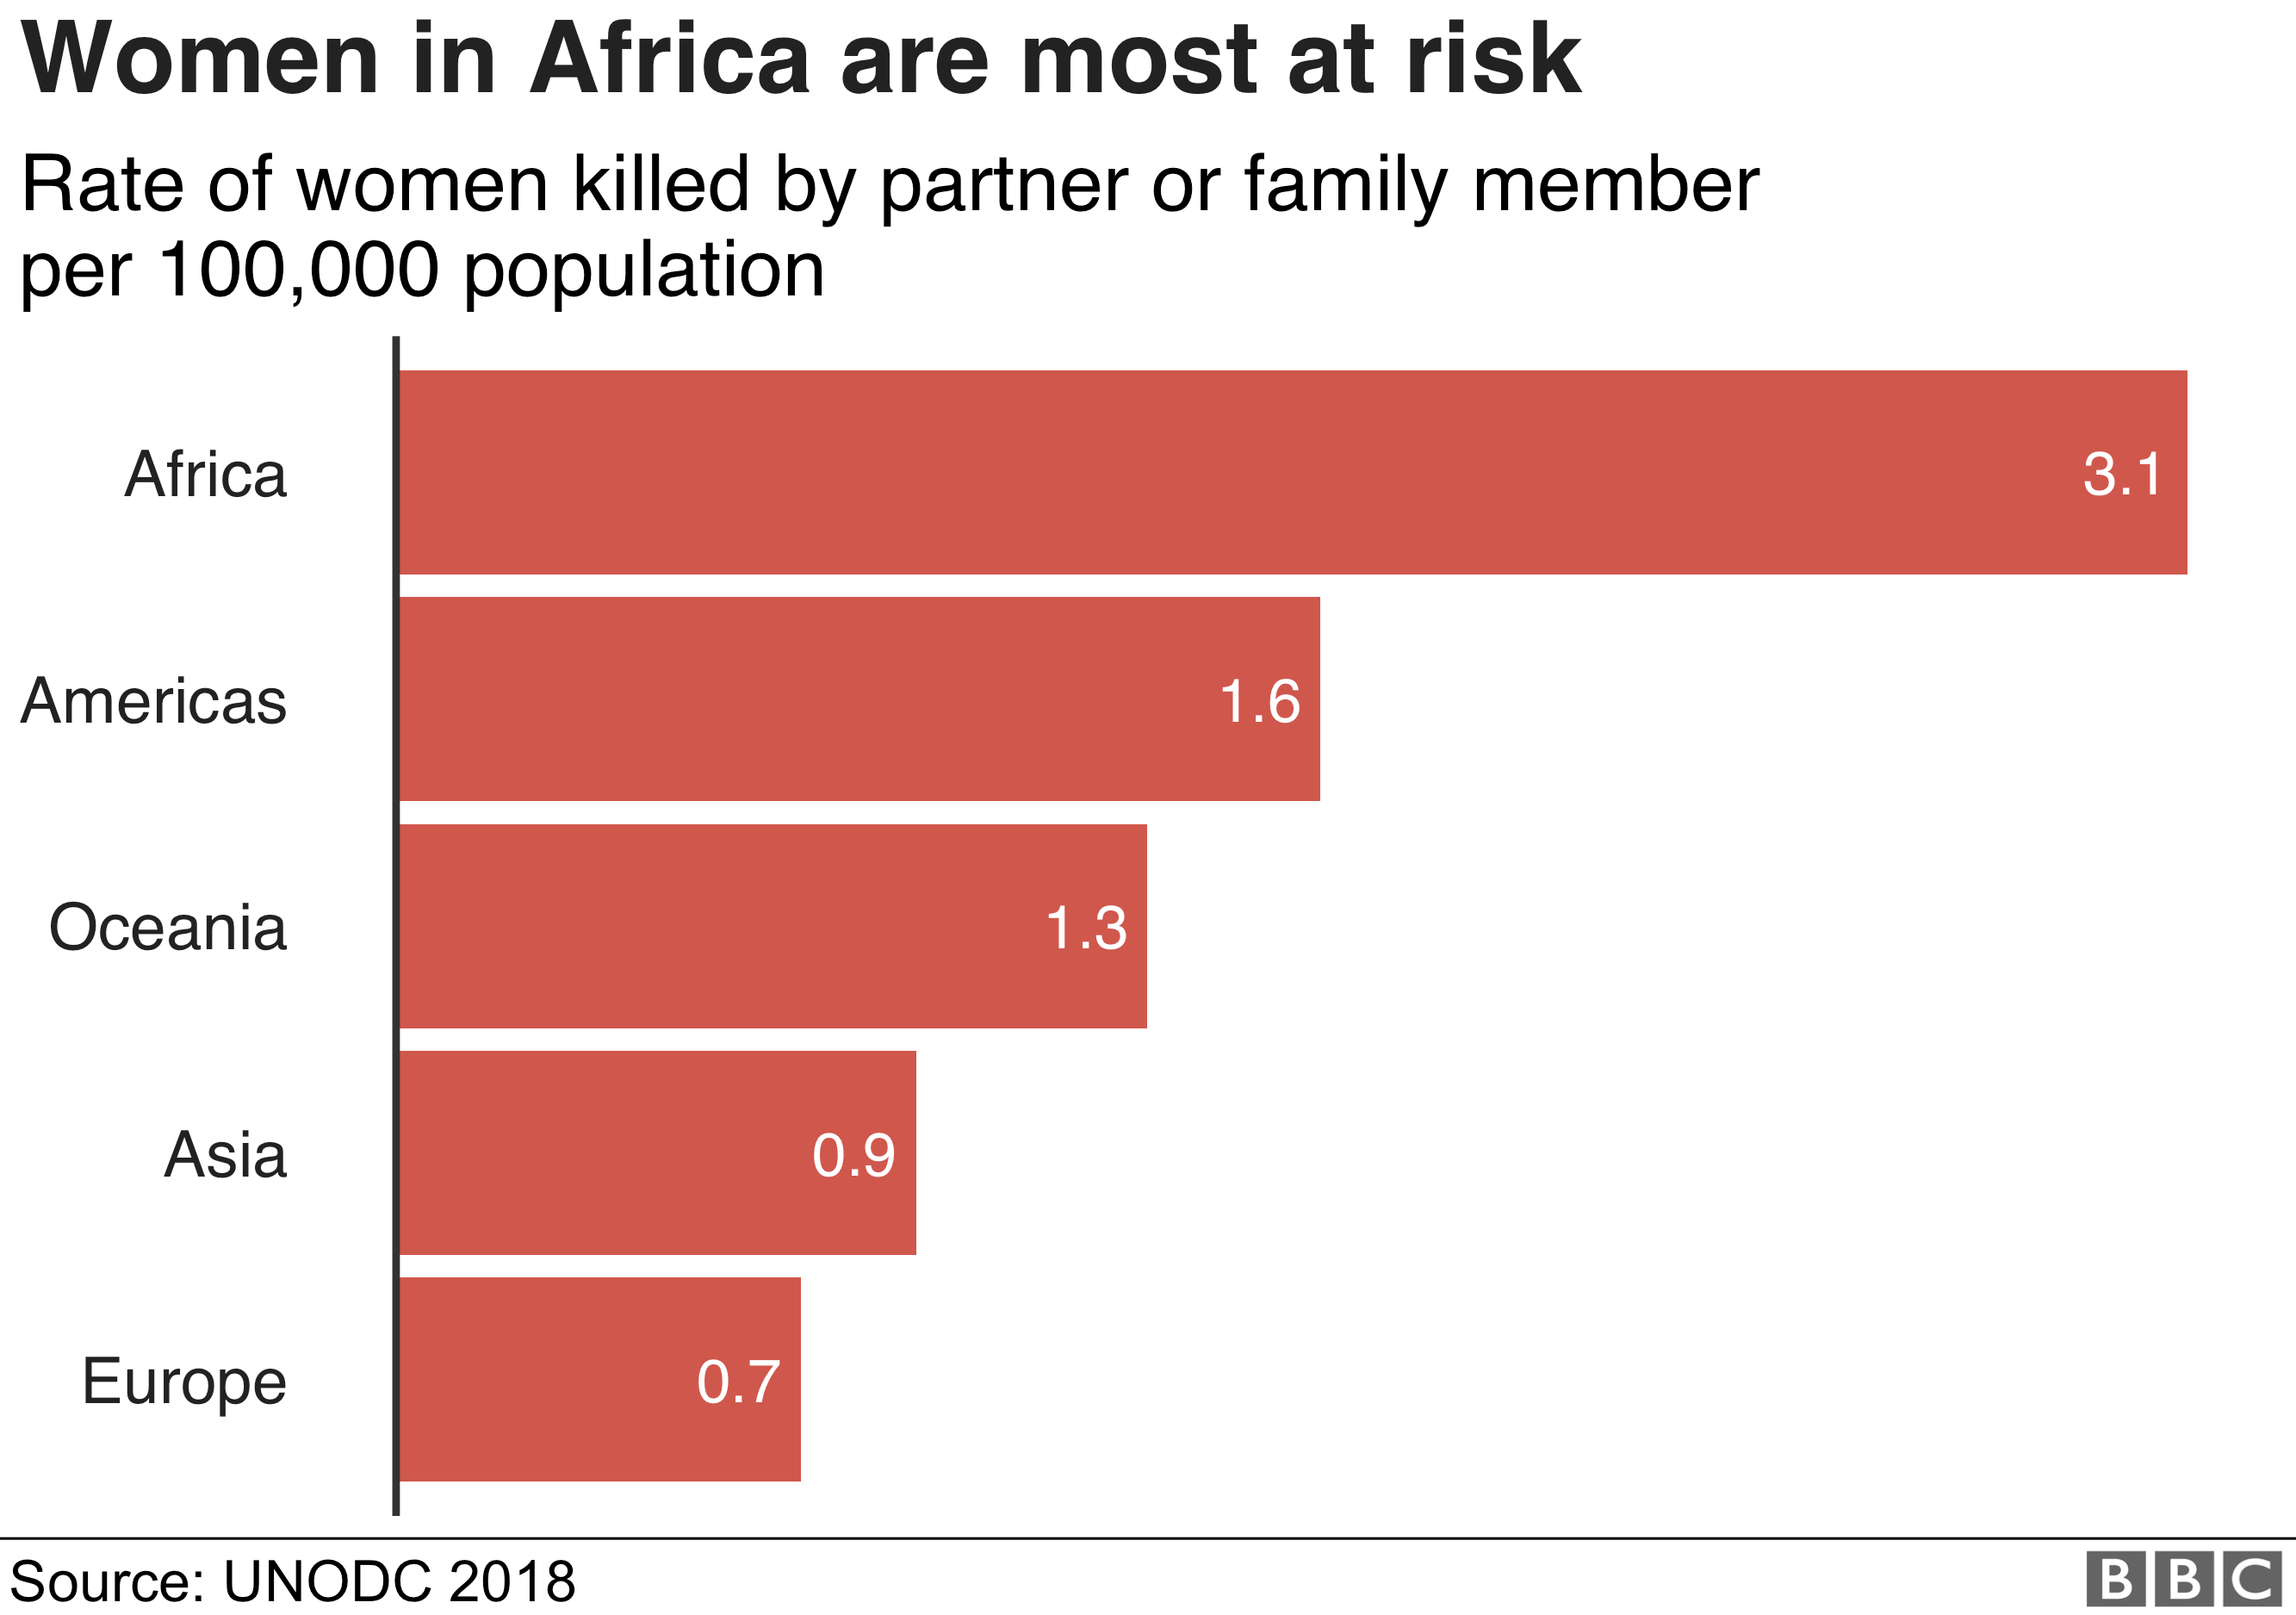 В докладе ООН говорится, что в Африке женщины подвергаются наибольшему риску быть убитым своим близким партнером или родственниками.